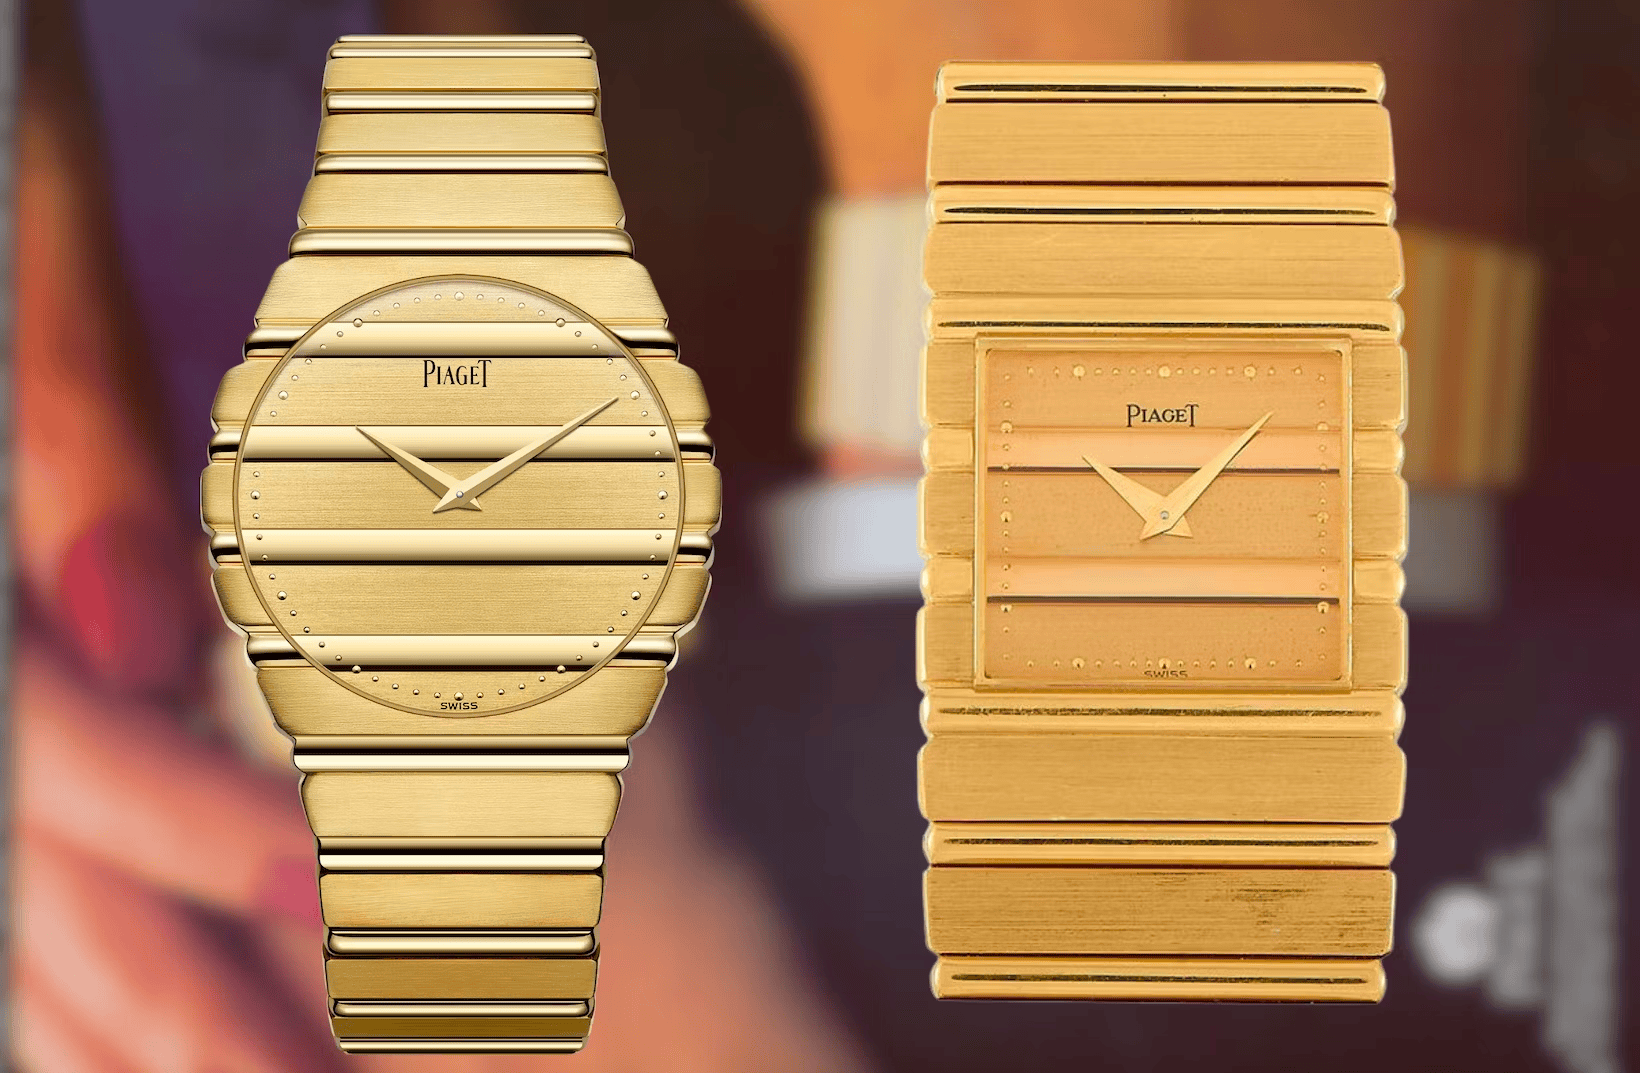 Lược sử đồng hồ Piaget Polo (kỳ I) 5